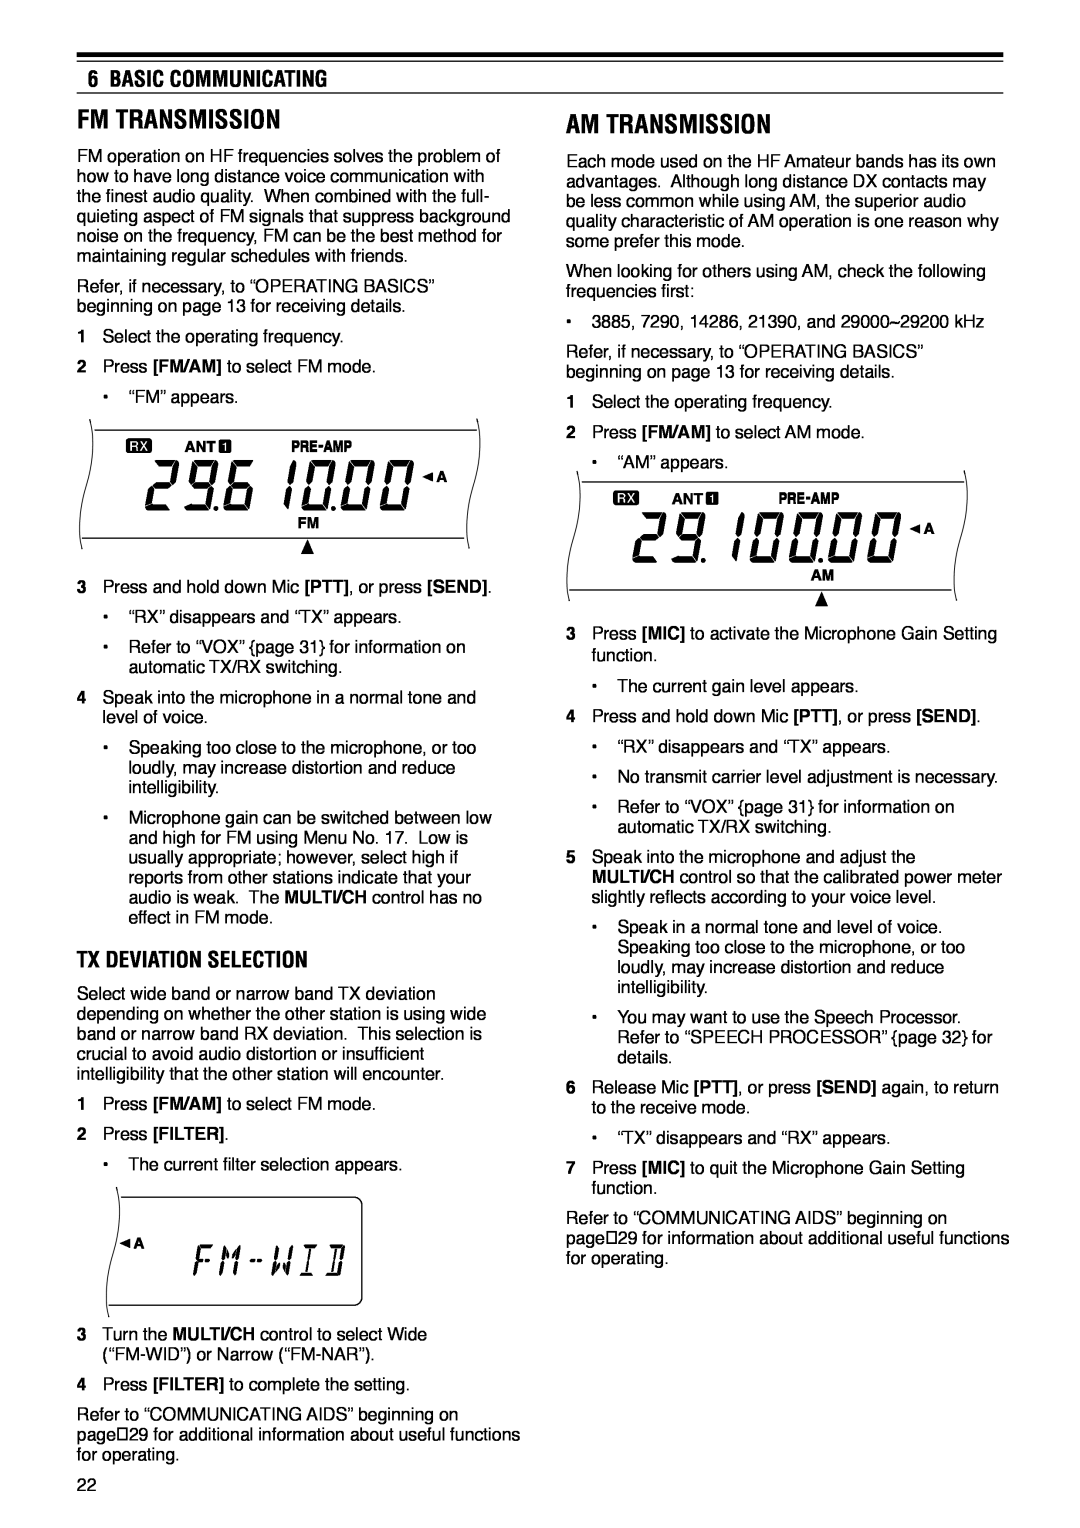 Kenwood TS-570D instruction manual Fm Transmission, Am Transmission, Tx Deviation Selection, Basic Communicating 